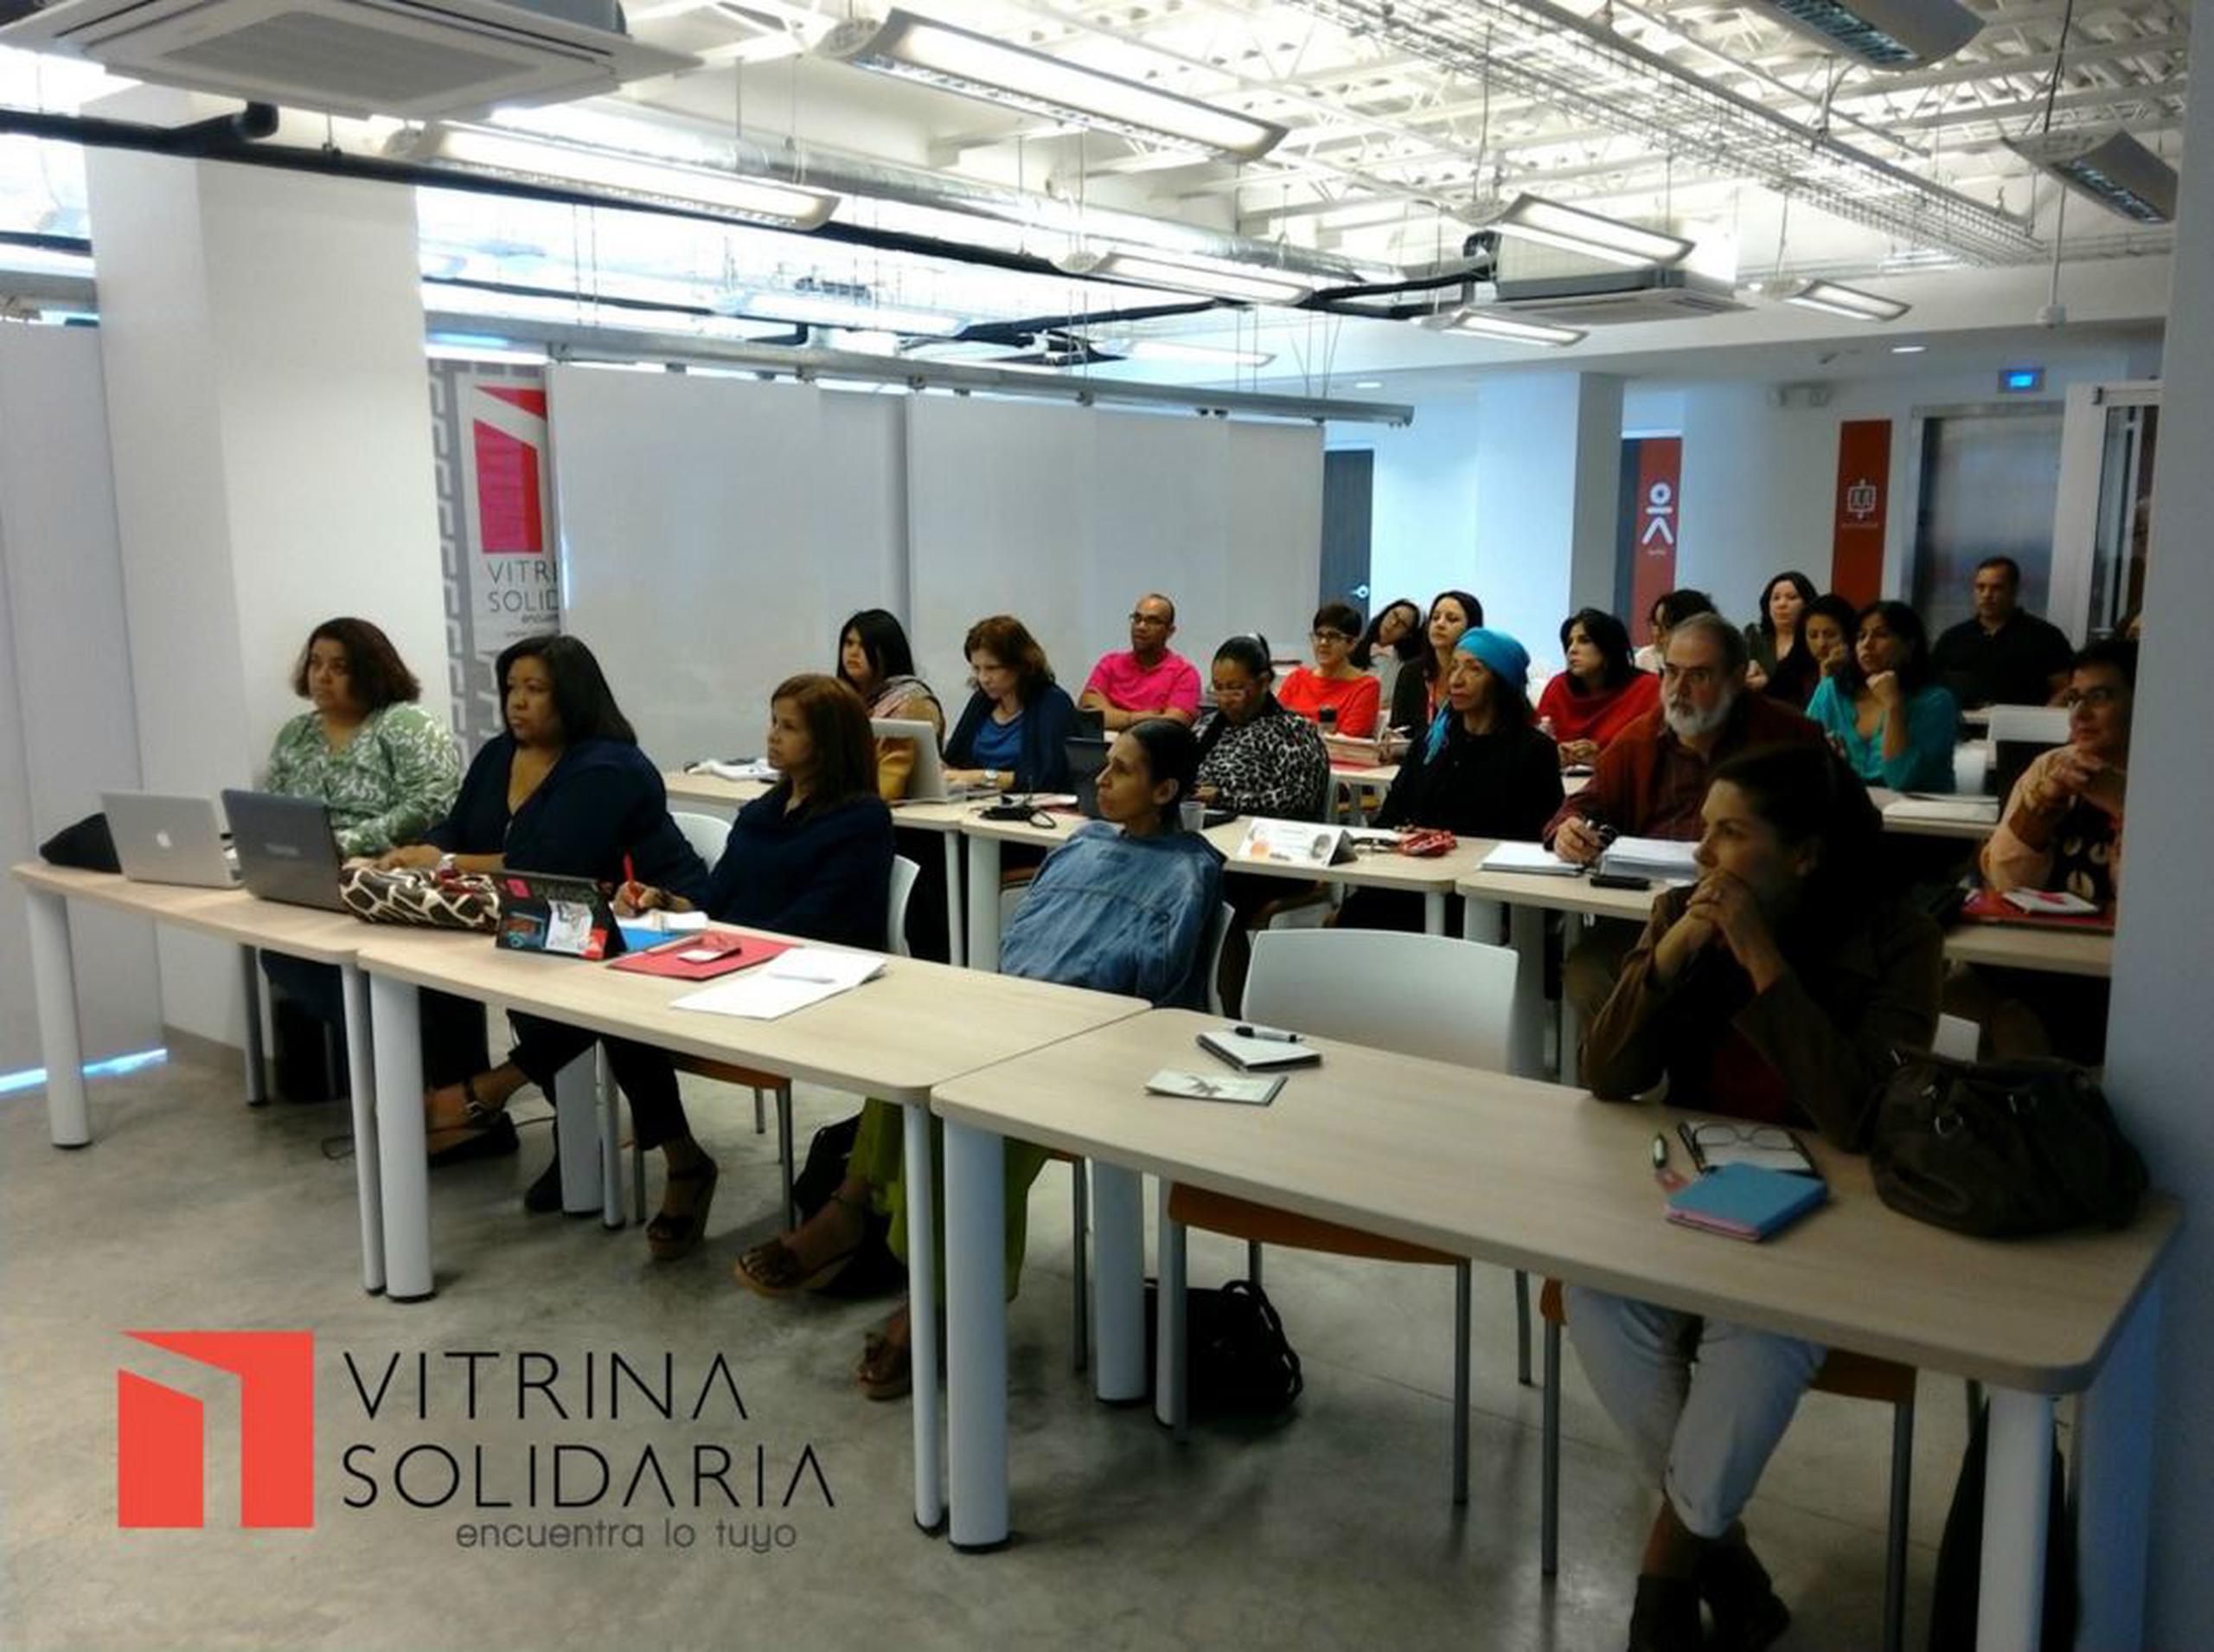 La visión de Vitrina Solidaria es fortalecer el tejido empresarial solidario puertorriqueño, educando al consumidor, aumentando la demanda de productos e invirtiendo en emprendedores solidarios. (Captura)